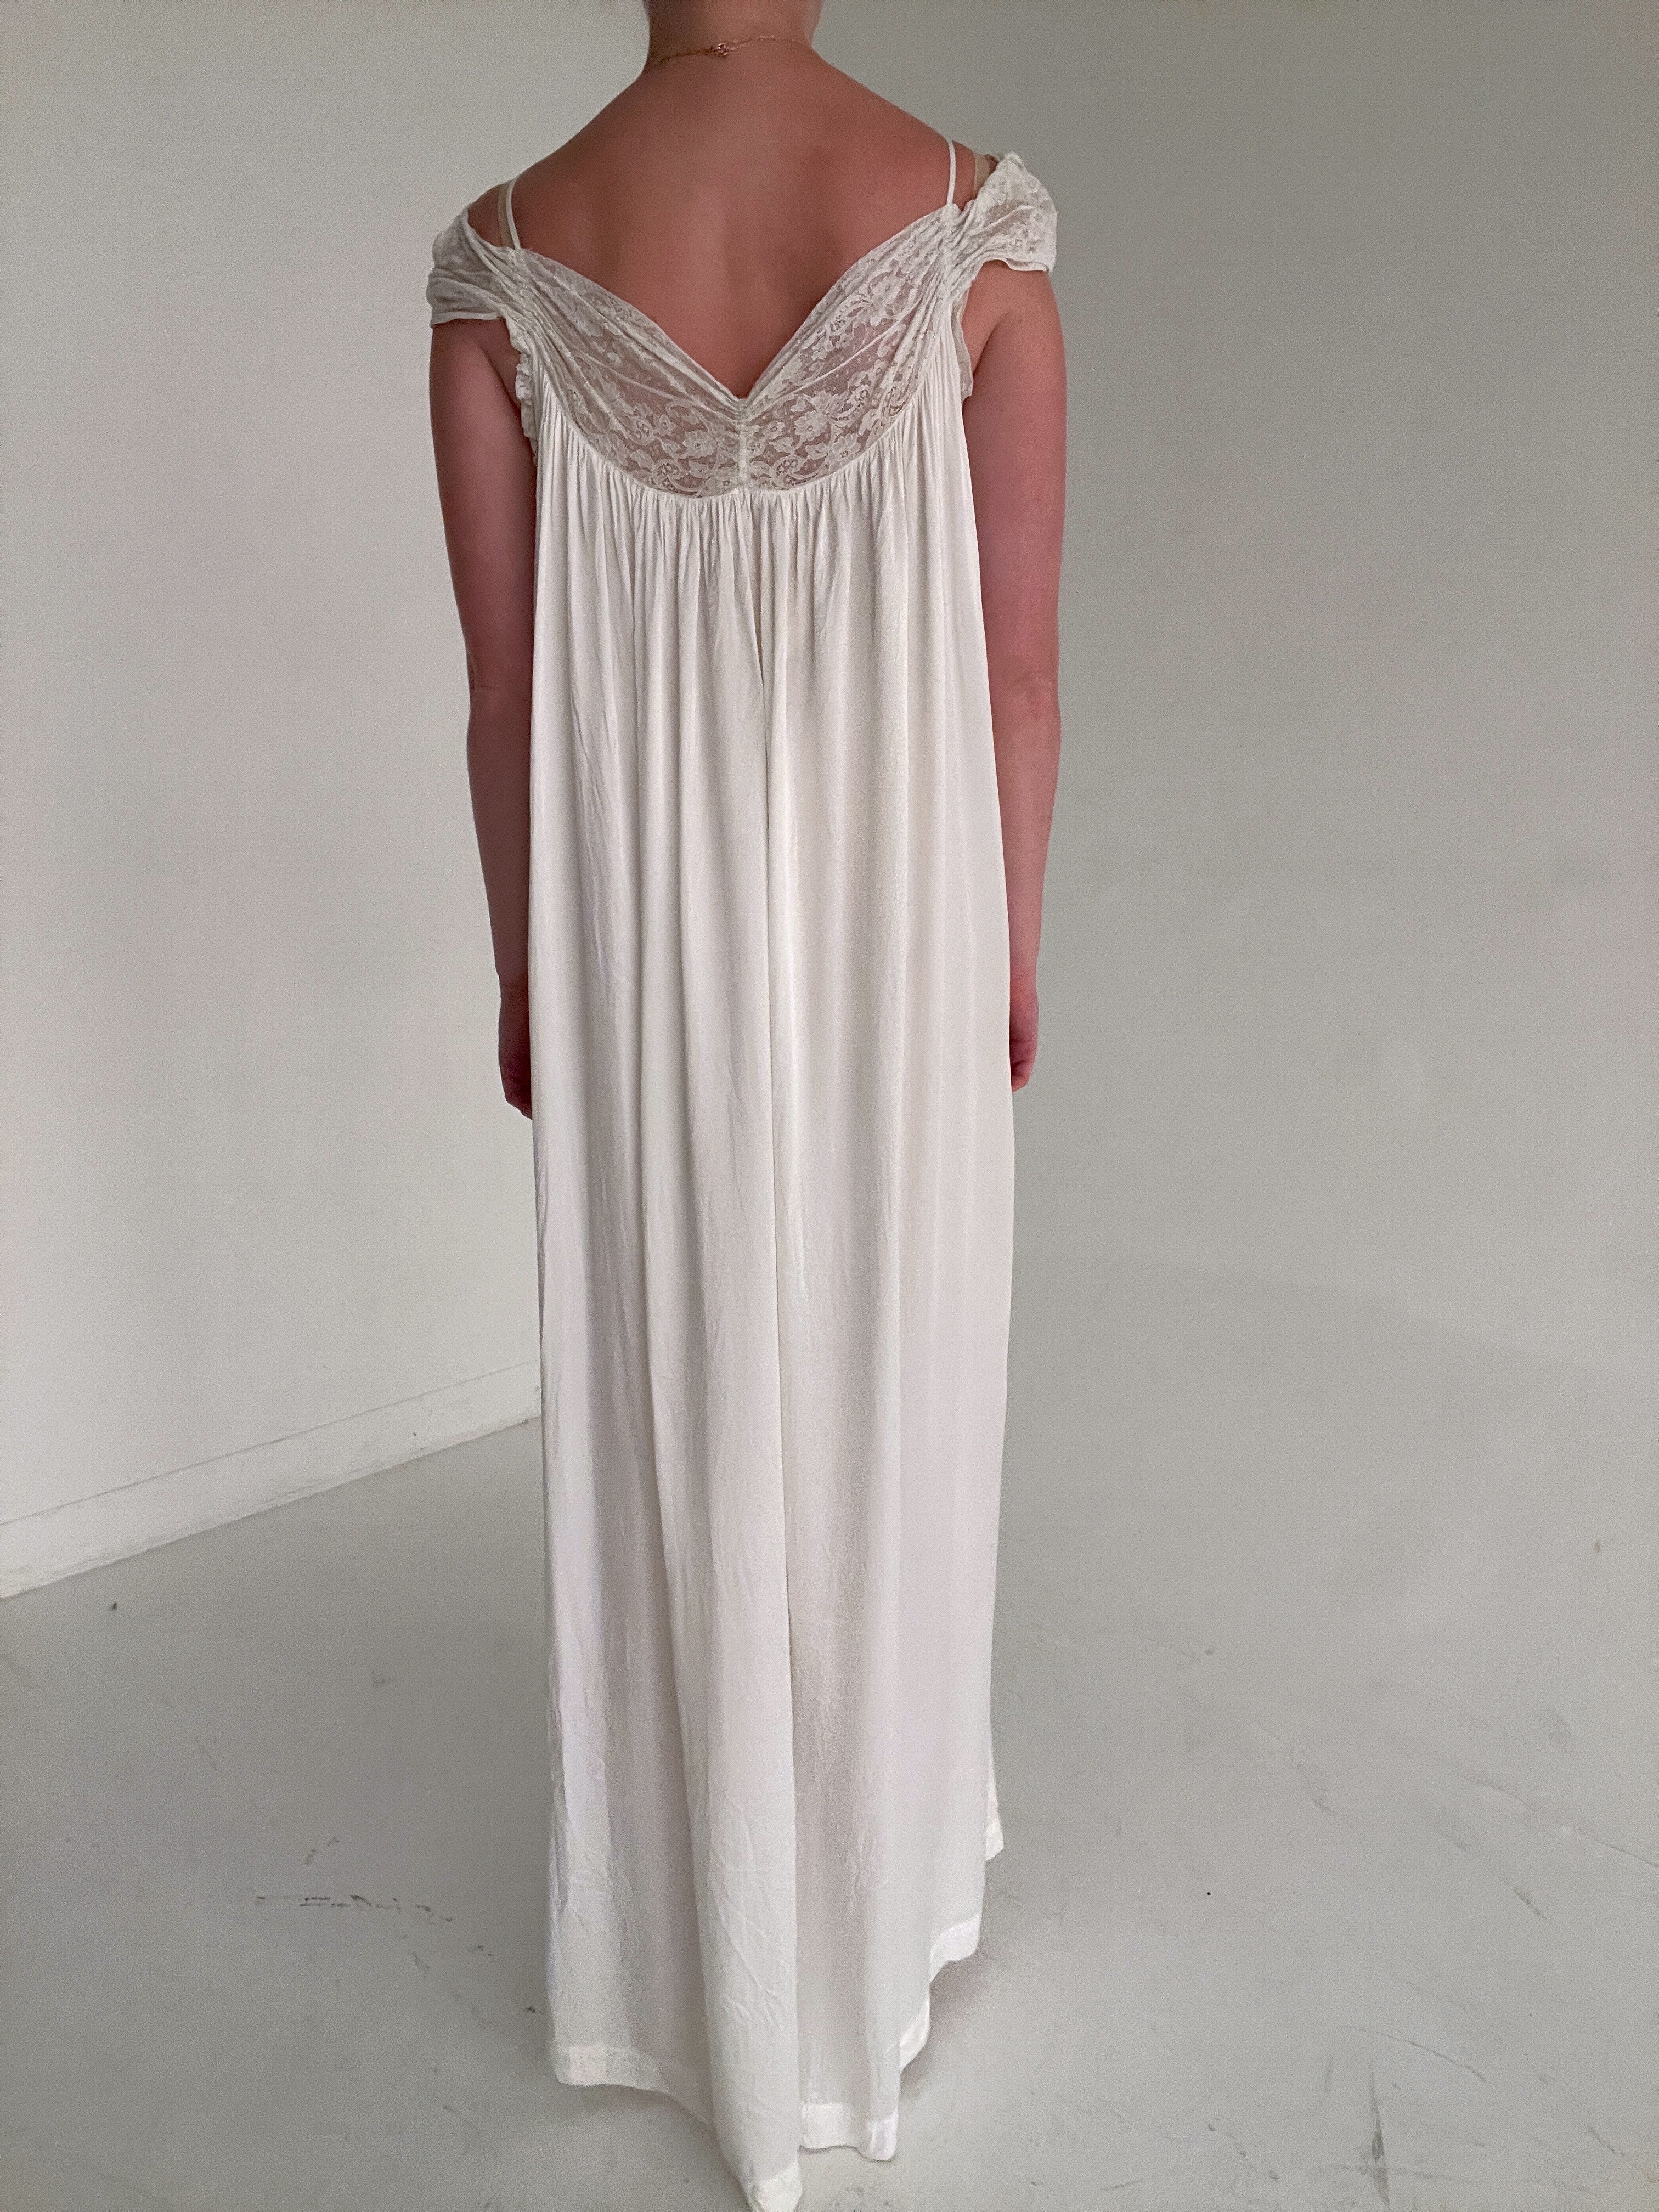 1930's Bridal White Satin Slip Dress